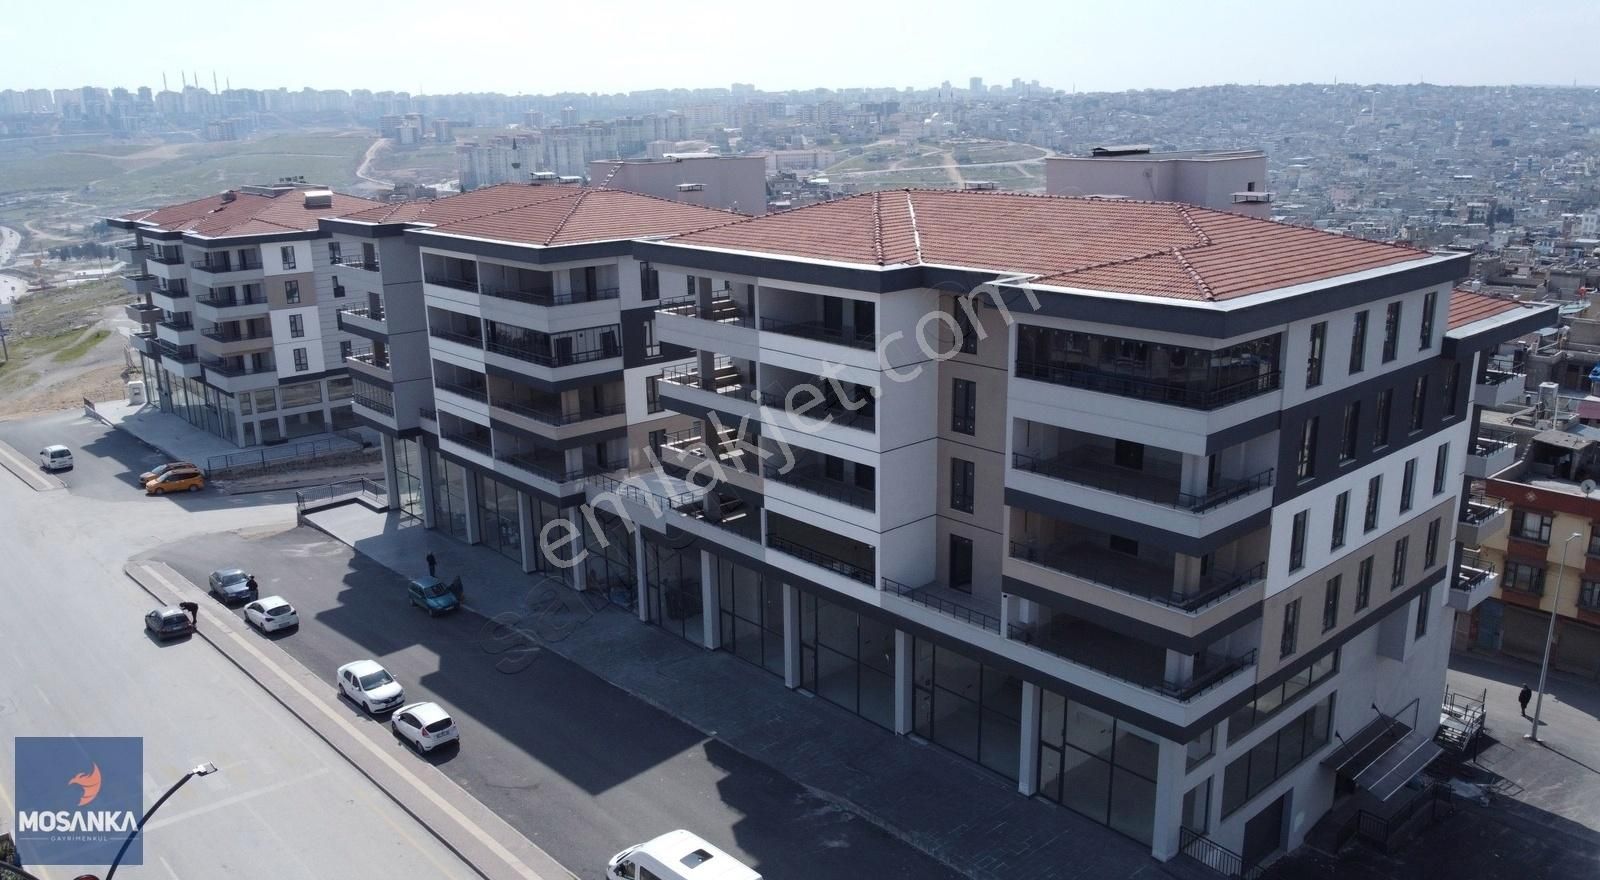 Şahinbey Kıbrıs Satılık Dükkan & Mağaza MosAnka'dan Merkezi Lokasyonda Satılık Ticari Dükkan